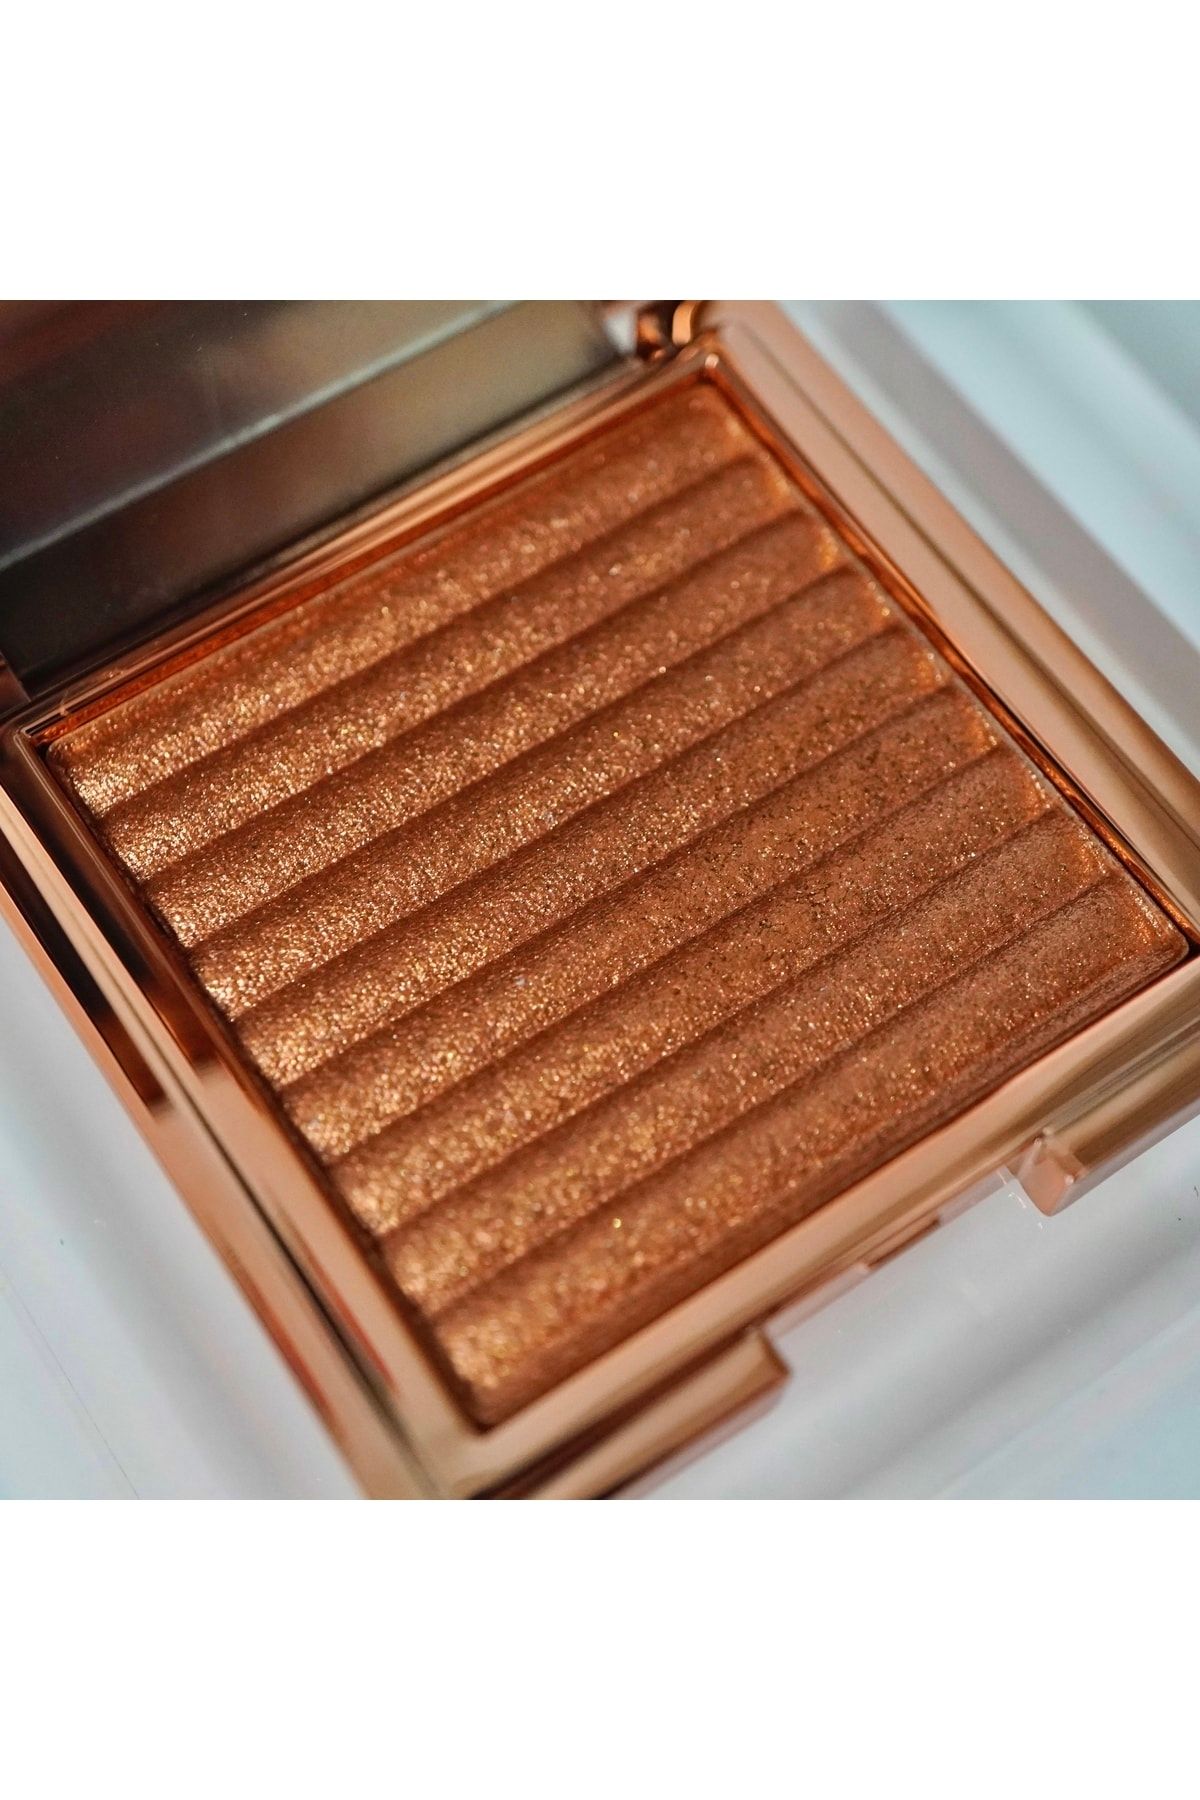 EDA LUXURY BEAUTY Golden Copper Bronze Star Shine Highlighter Işıltılı Ipeksi Saten Aydinlatici Vegan Makeup Glow